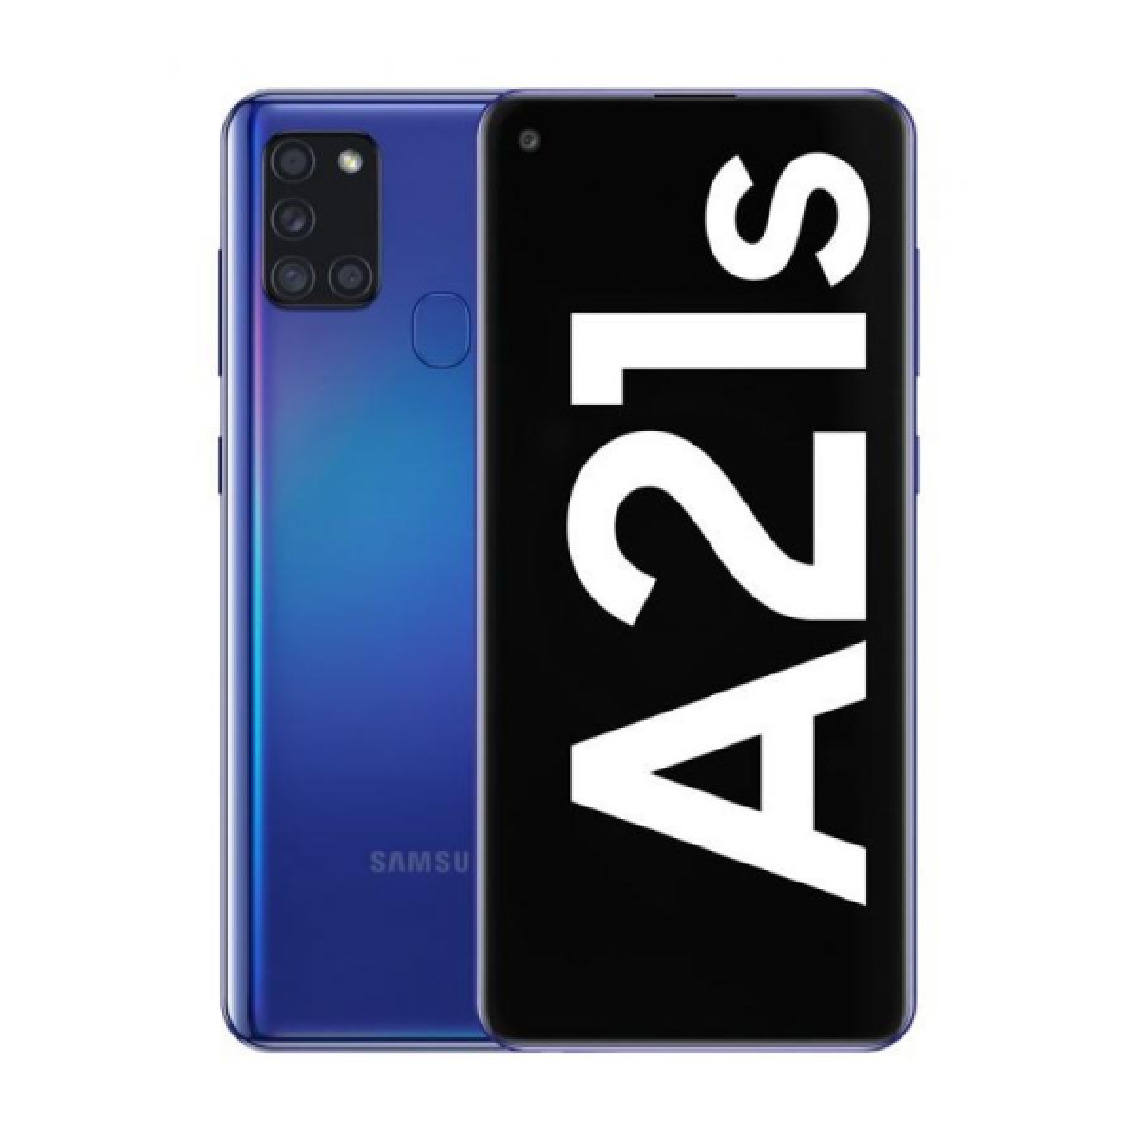 Samsung - Samsung Galaxy A21s 4GB/364GB Azul Dual SIM A217 - Smartphone Android